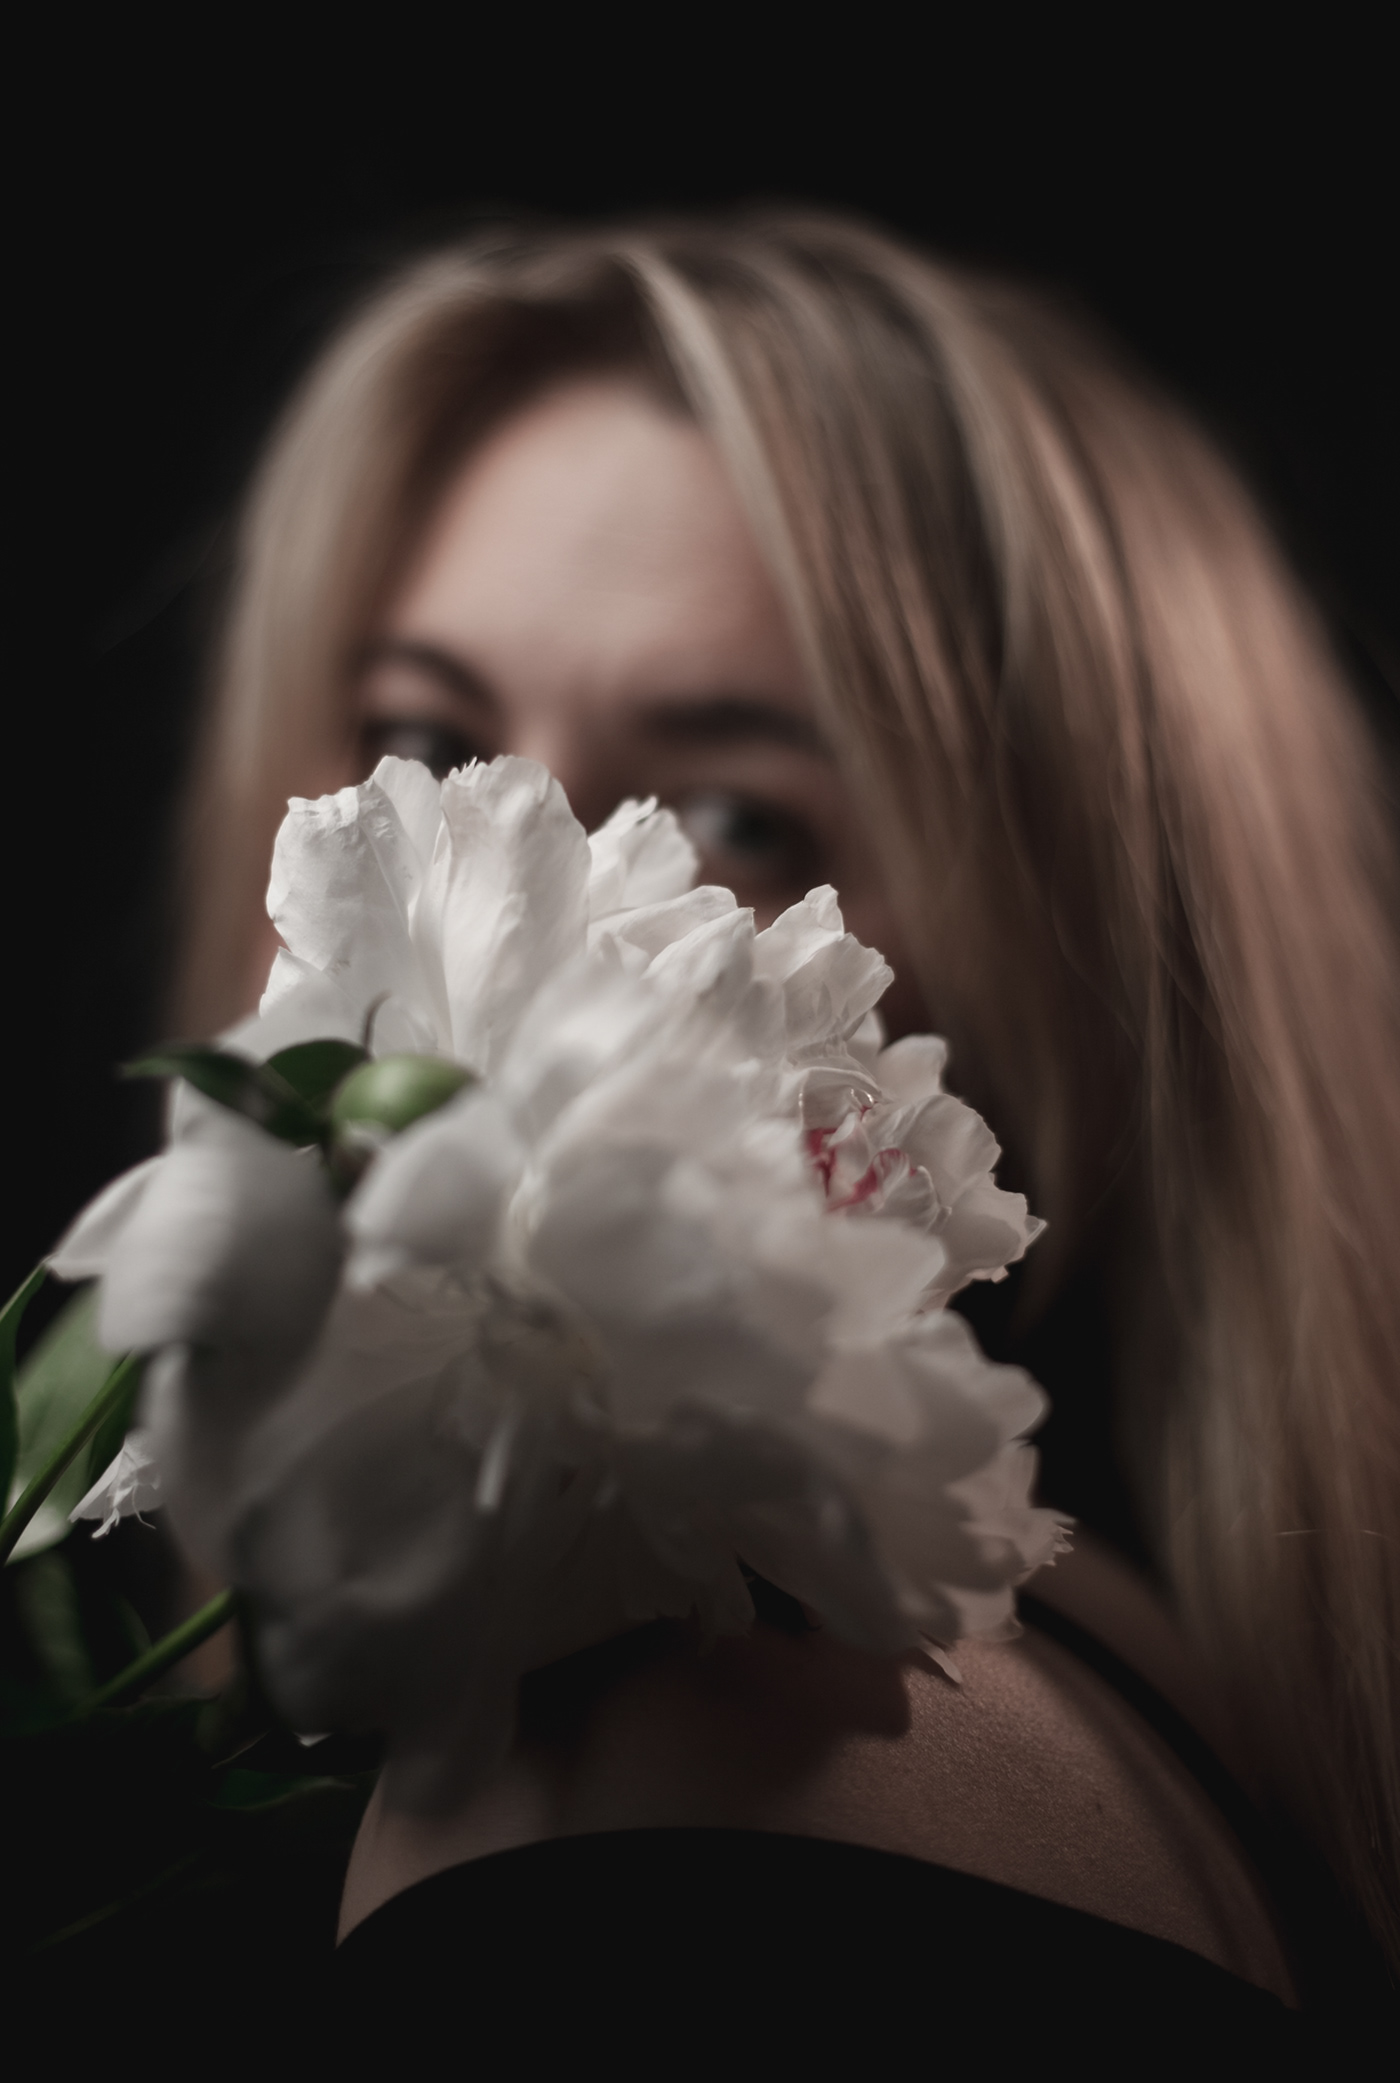 blonde blur dark Flowers girl Nature peonies people White